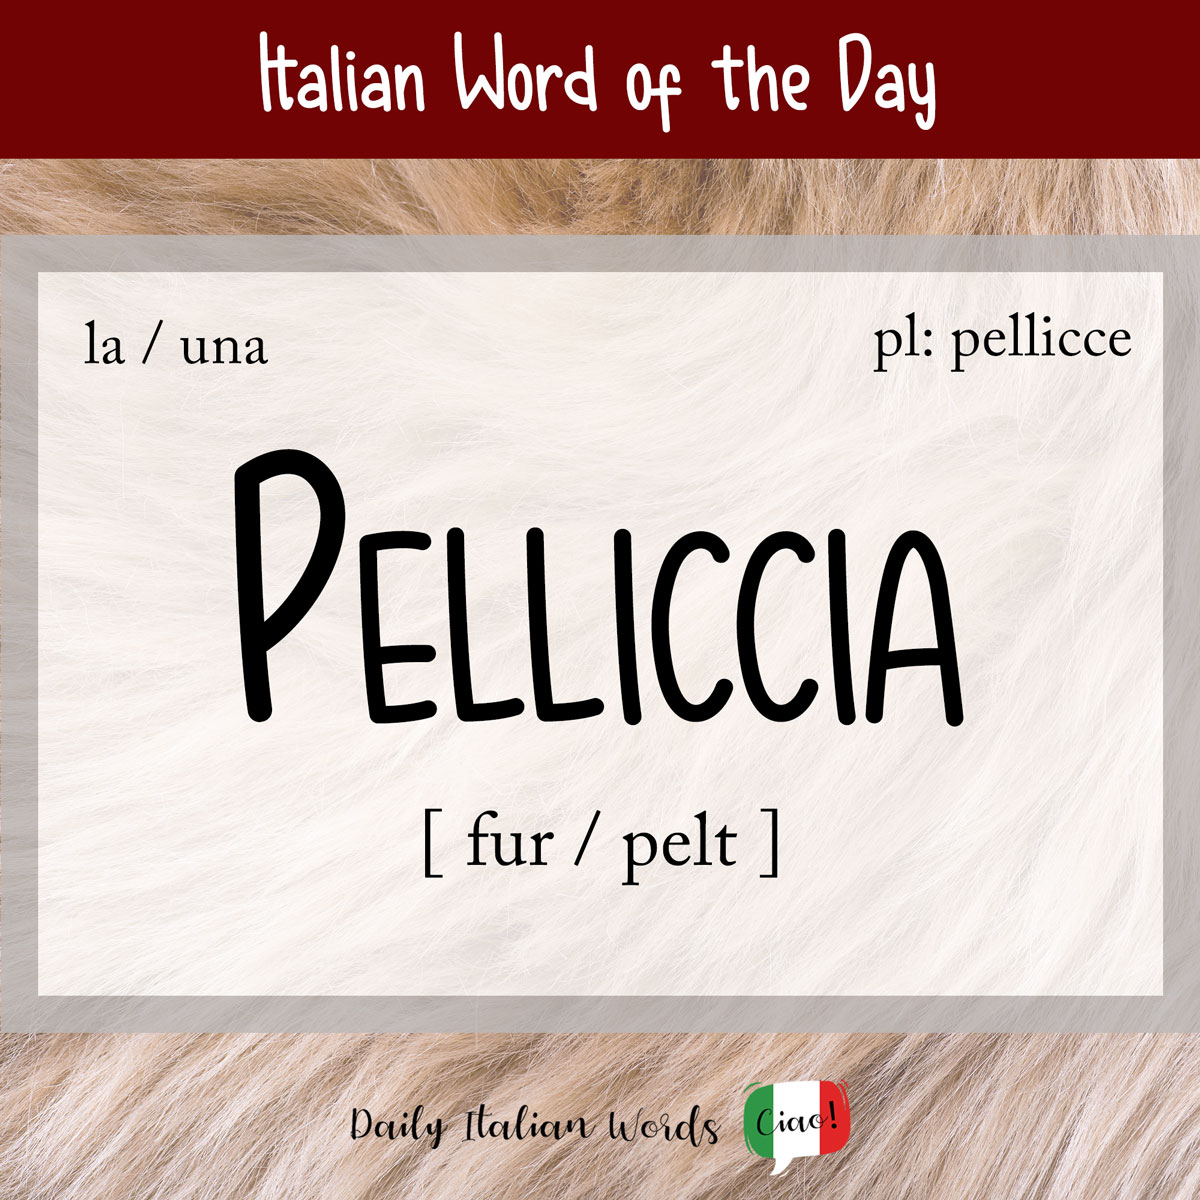 Italian word of the day: Pelliccia (fur/fur)